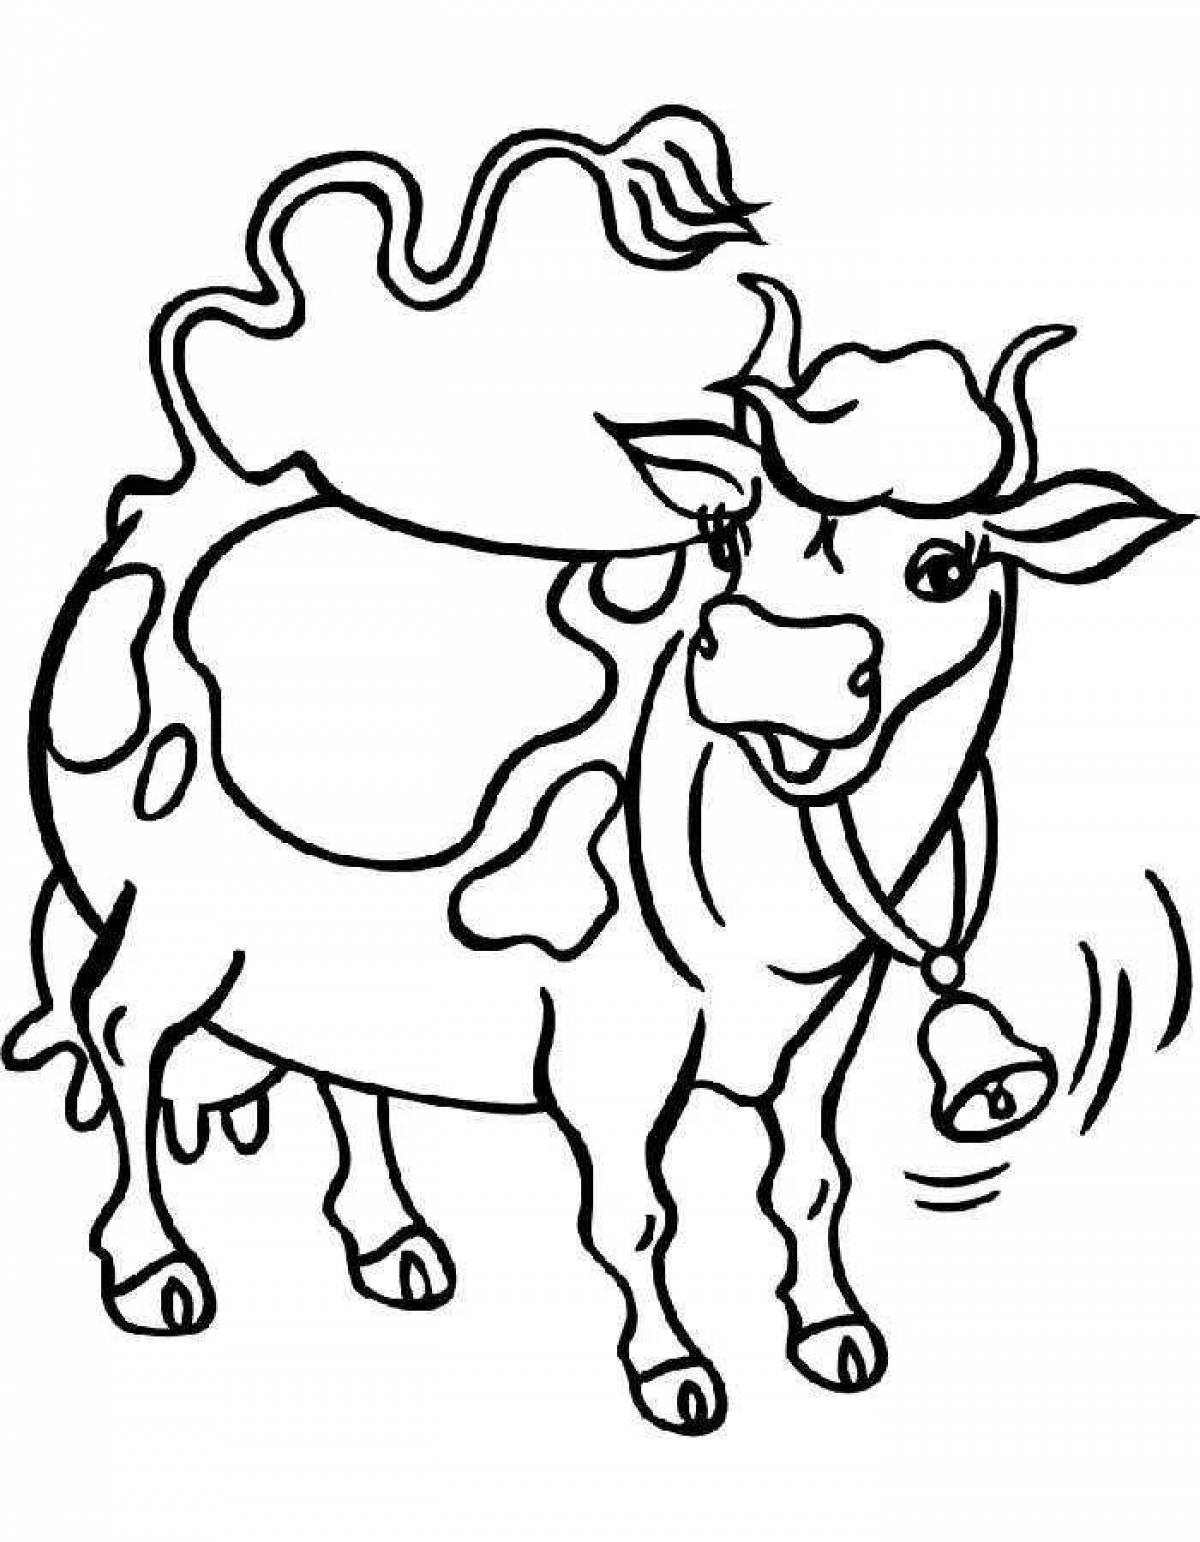 Раскрашивать коров. Раскраска корова. Корова раскраска для детей. Корова картинка для детей раскраска. Корова рисунок для раскрашивания.